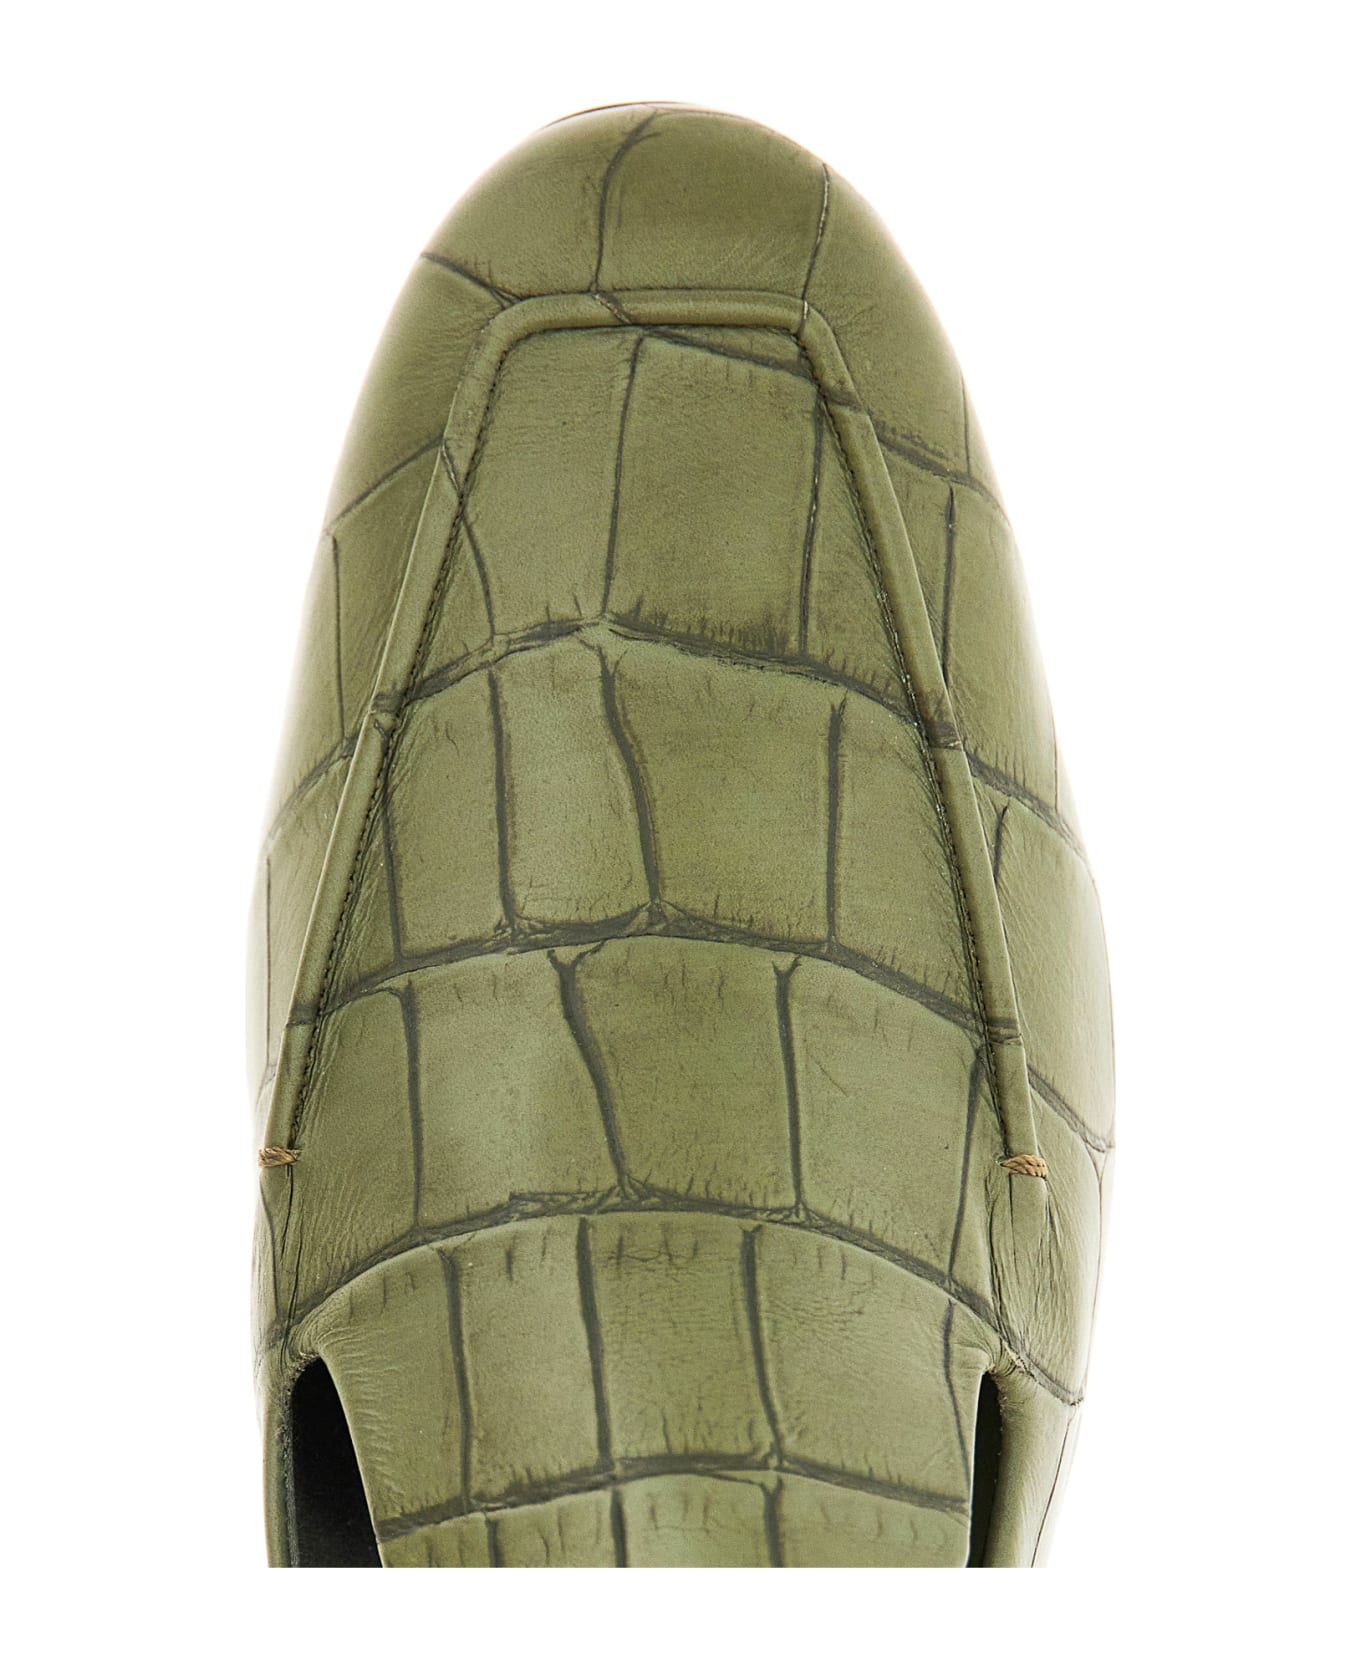 Max Mara Accessori Laris Leather Loafers - Green